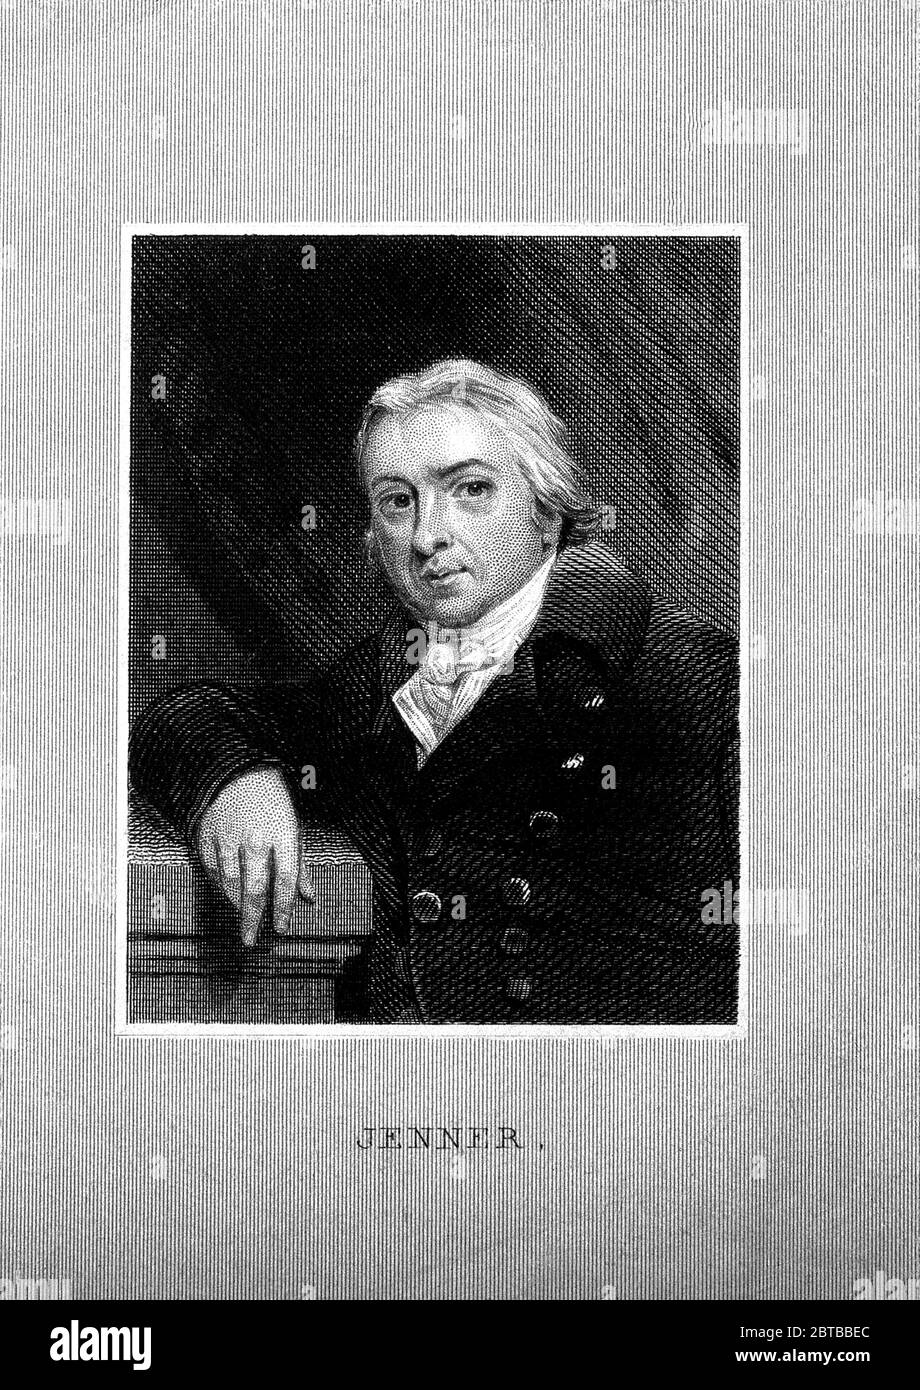 1800 ca , GREAT BRITAIN : The british physician , virologist and naturalist EDWARD JENNER ( 1749 - 1823 ), who was a contributor to development of the SMALLPOX VACCINE . Portrait after John Raphael Smith . - VACCINATION - VIRUS - VIROLOGO - VIROLOGIST - ANTIVAIOLOSA - ANTIVAIOLO - ANTI-VAIOLO - ANTIVAIOLOSA - VAIOLO - VACCINAZIONE - foto storiche - scienziato - scientist - portrait - ritratto - GRAND BRETAGNA  - DOTTORE - MEDICO - MEDICINA - medicine - SCIENZA - SCIENCE  - SCIENZIATO - illustrazione - illustration  ---  Archivio GBB Stock Photo